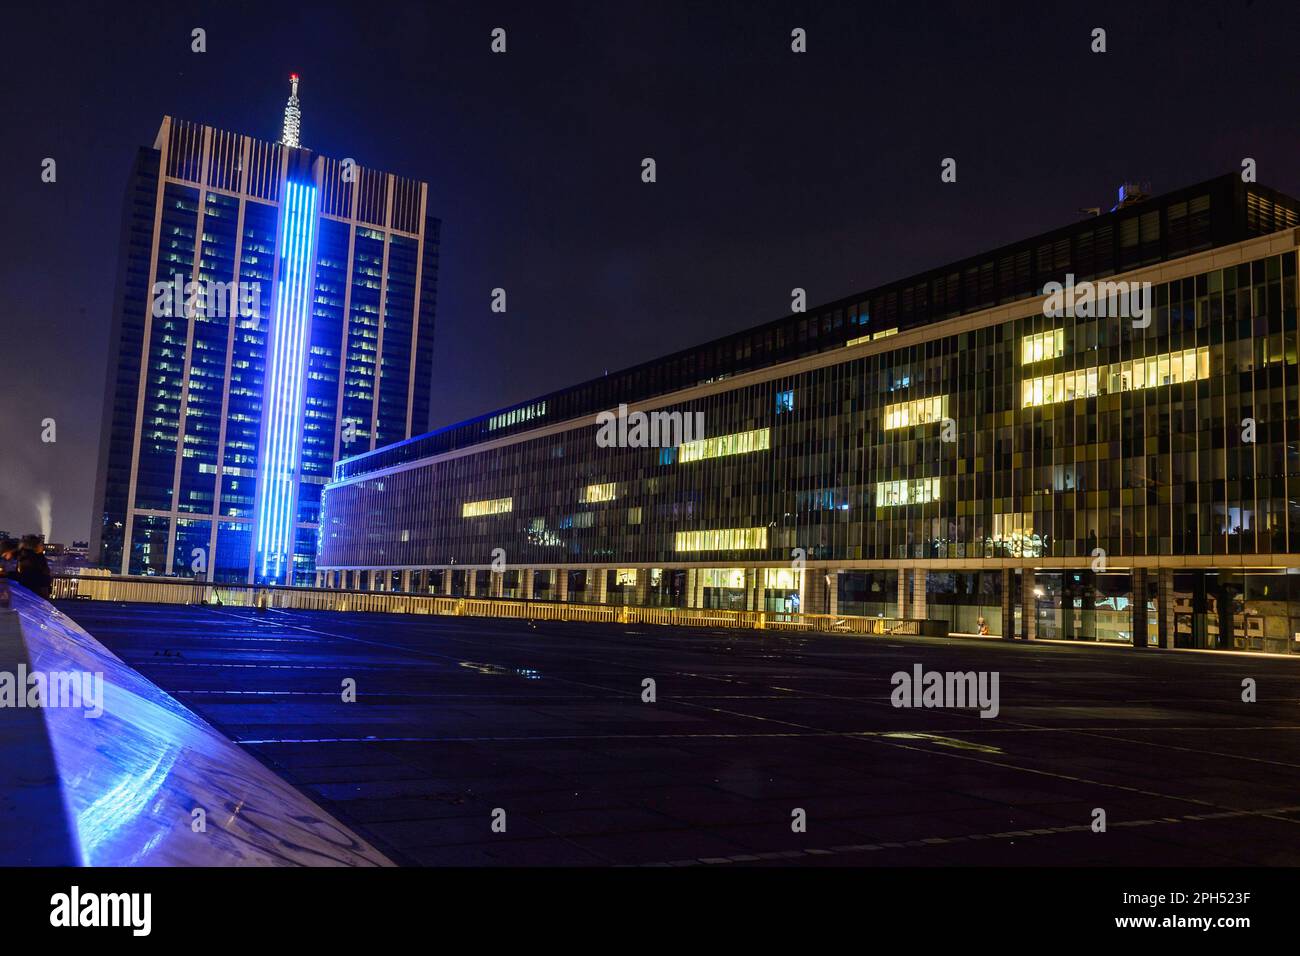 Pres de la Place du Congres, vue de nuit sur la cite administrative qui revele une architecture moderniste des annees 60. Le leiu n'appartient plus A Stockfoto